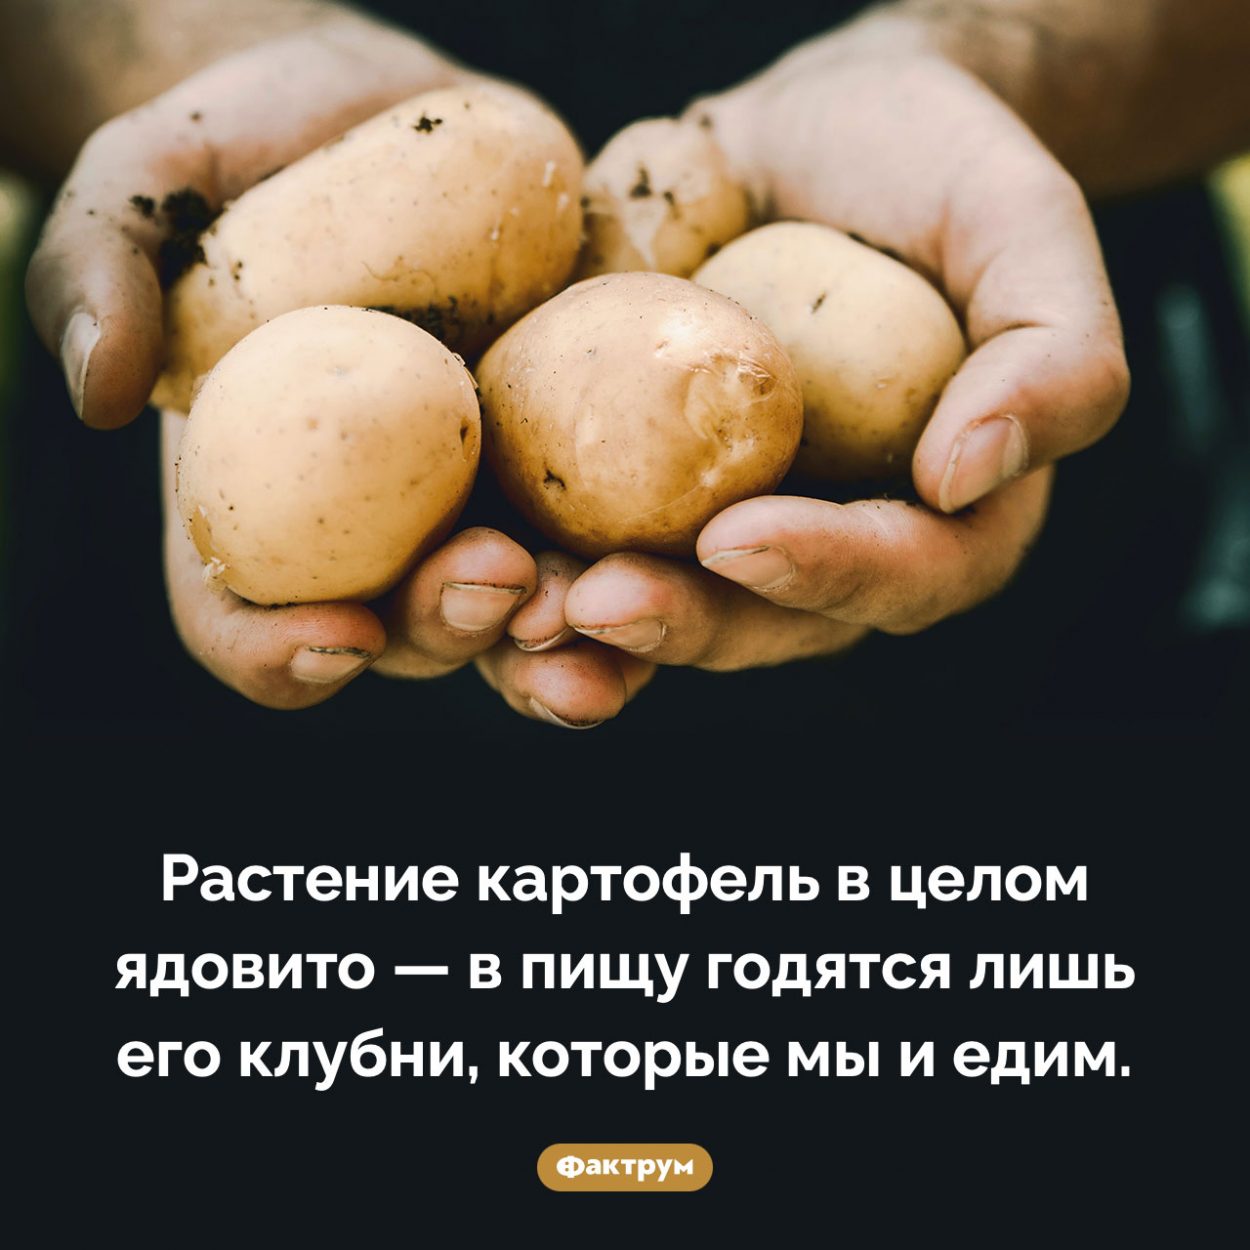 Ядовитый картофель. Растение картофель в целом ядовито — в пищу годятся лишь его клубни, которые мы и едим.